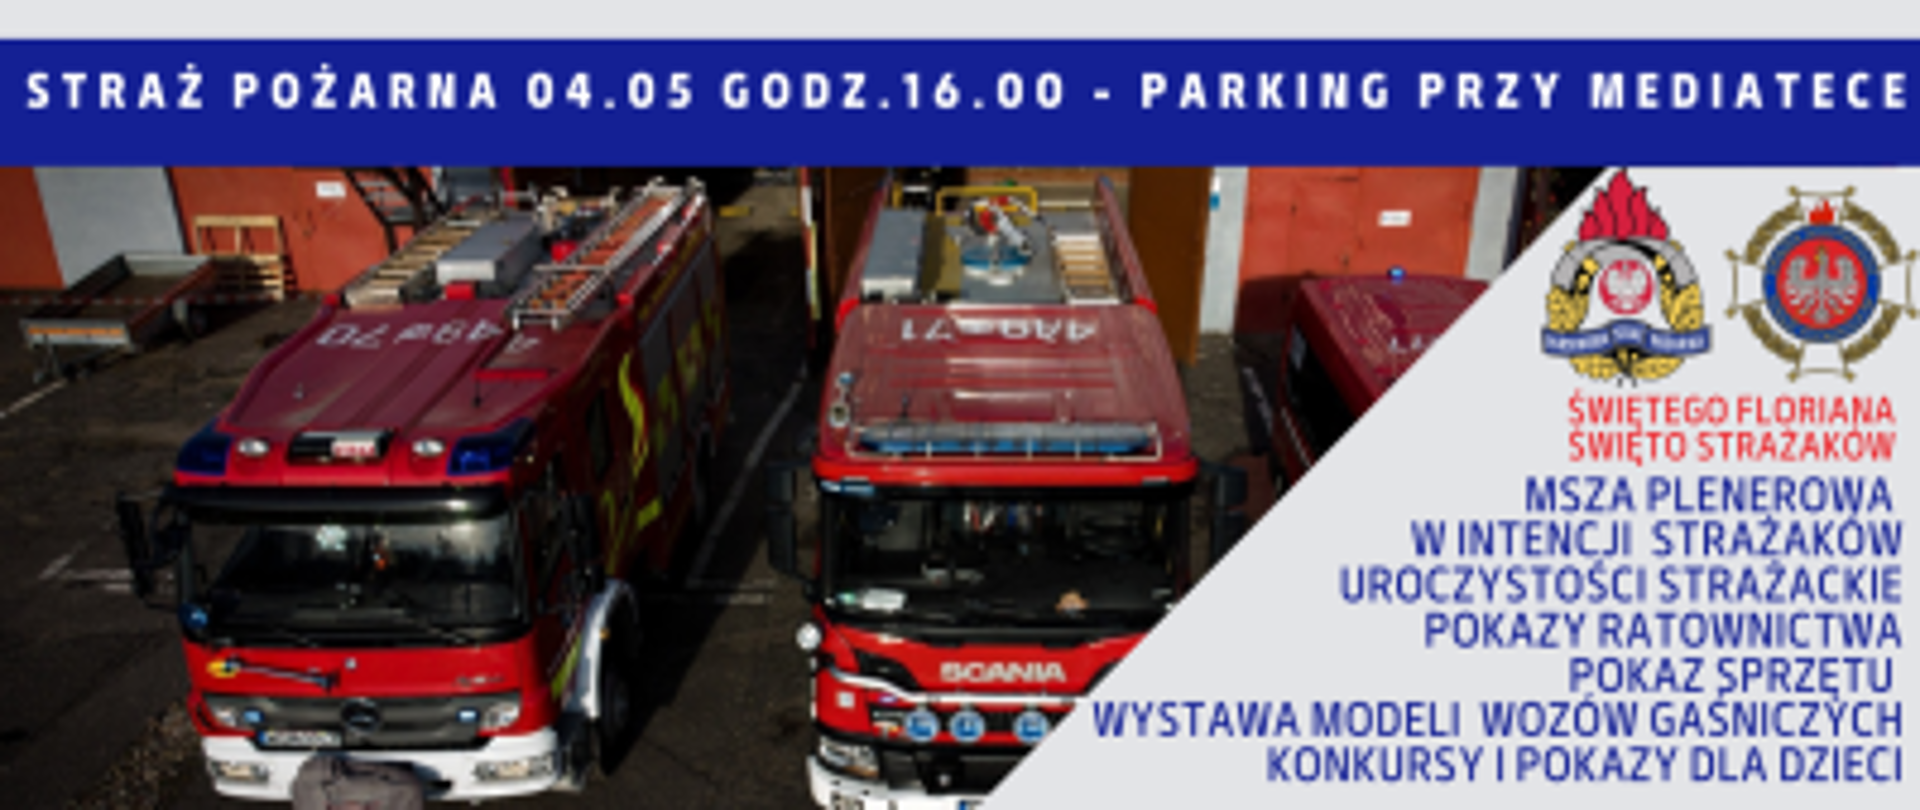 Plakat promujący wydarzenia na terenie miasta i gminy Grodzisk Mazowiecki. 04.05 Straż Pożarna, 05.05 Straż Miejska, 06.05 Policja